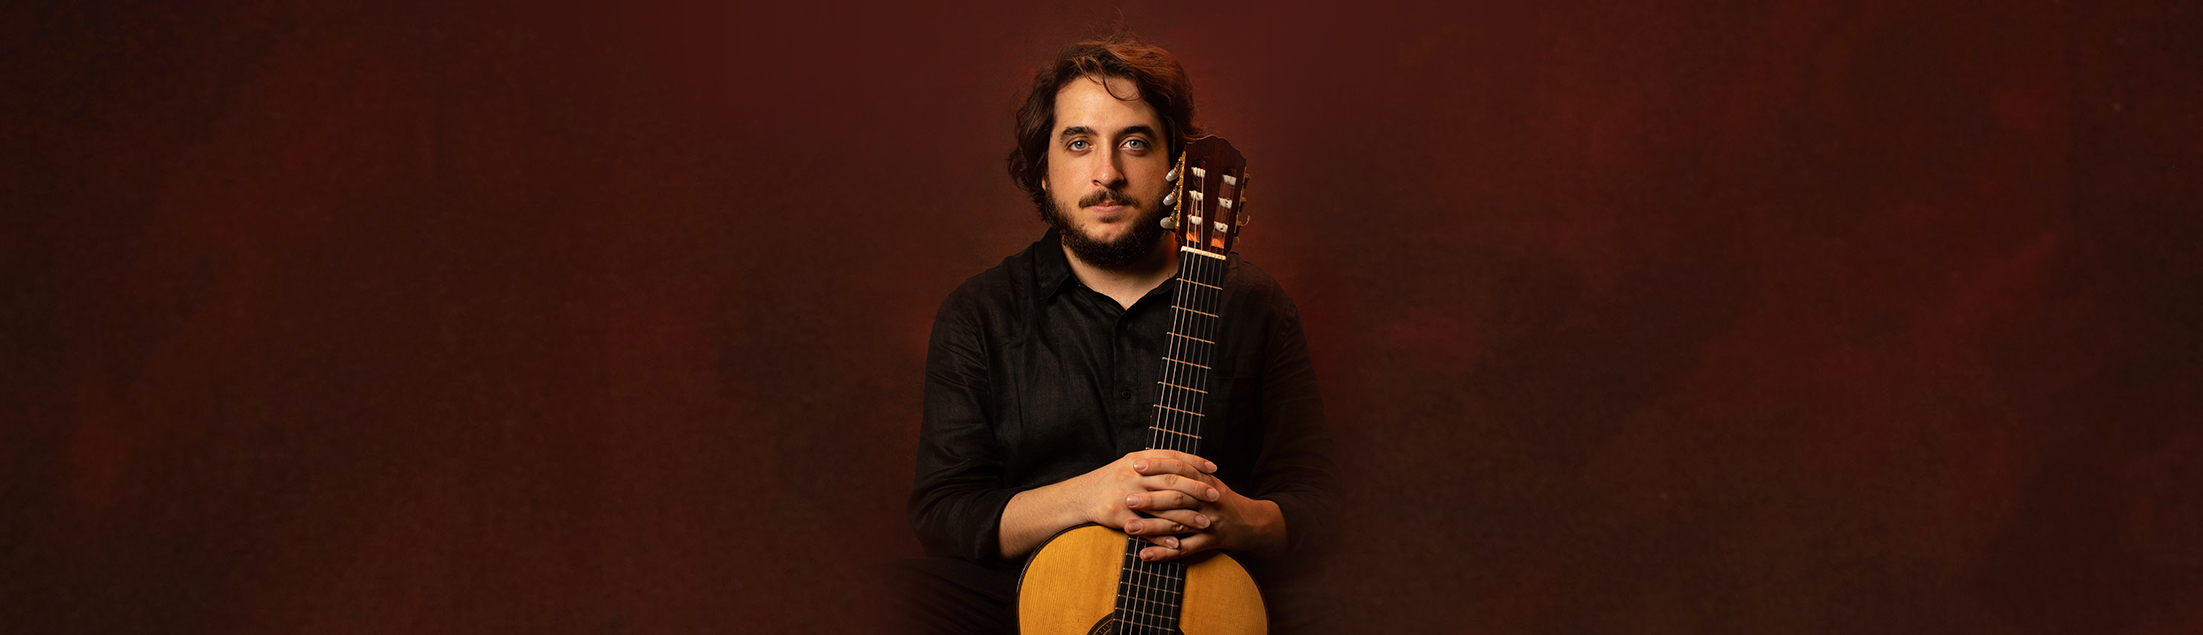 O violonista e compositor João Camarero lança o primeiro de dois singles pela Biscoito Fino